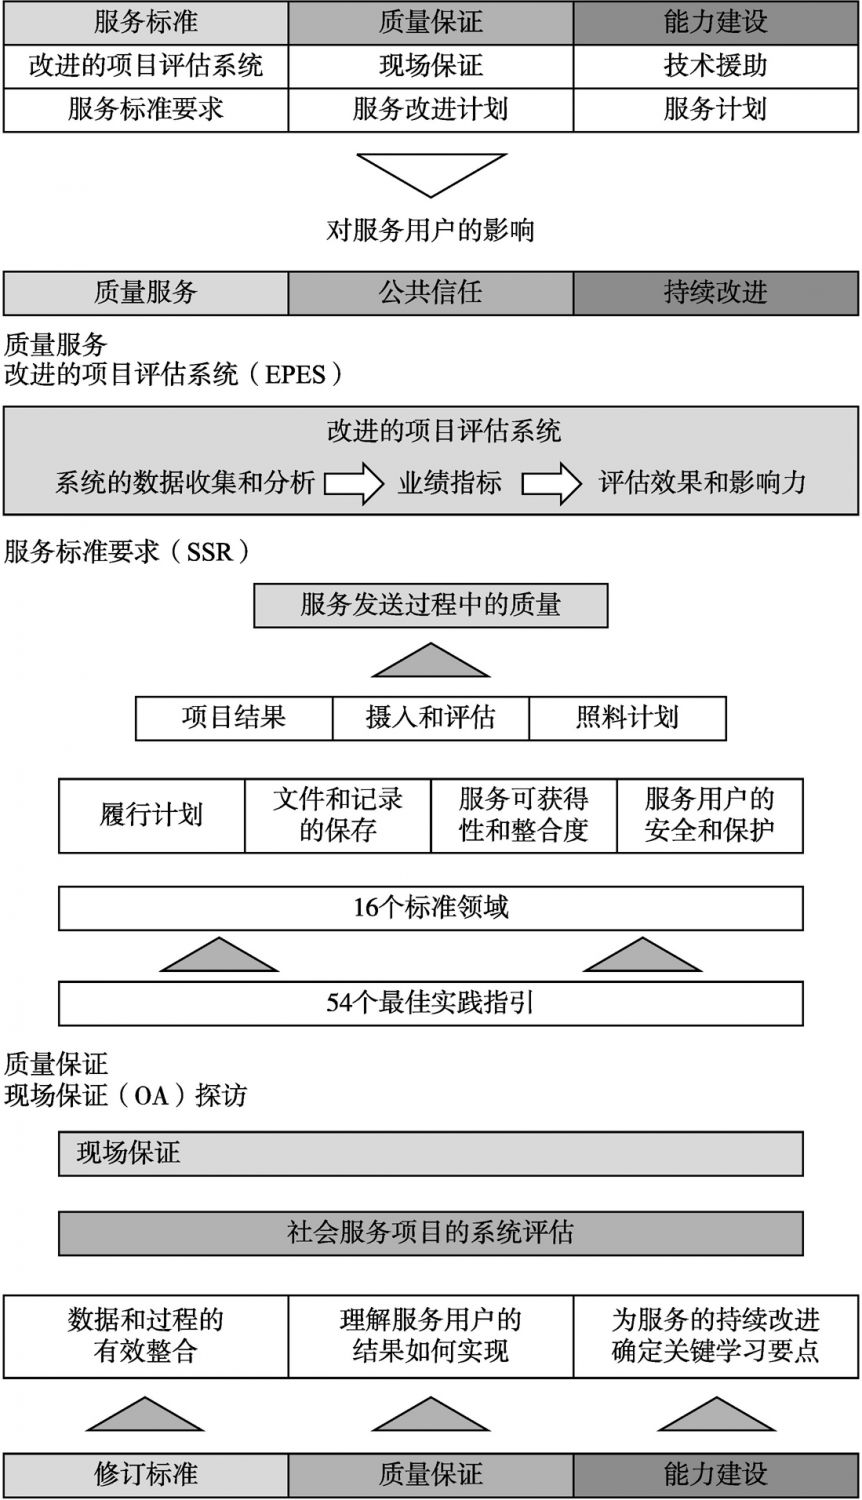 图11-1 NCSS服务标准框架